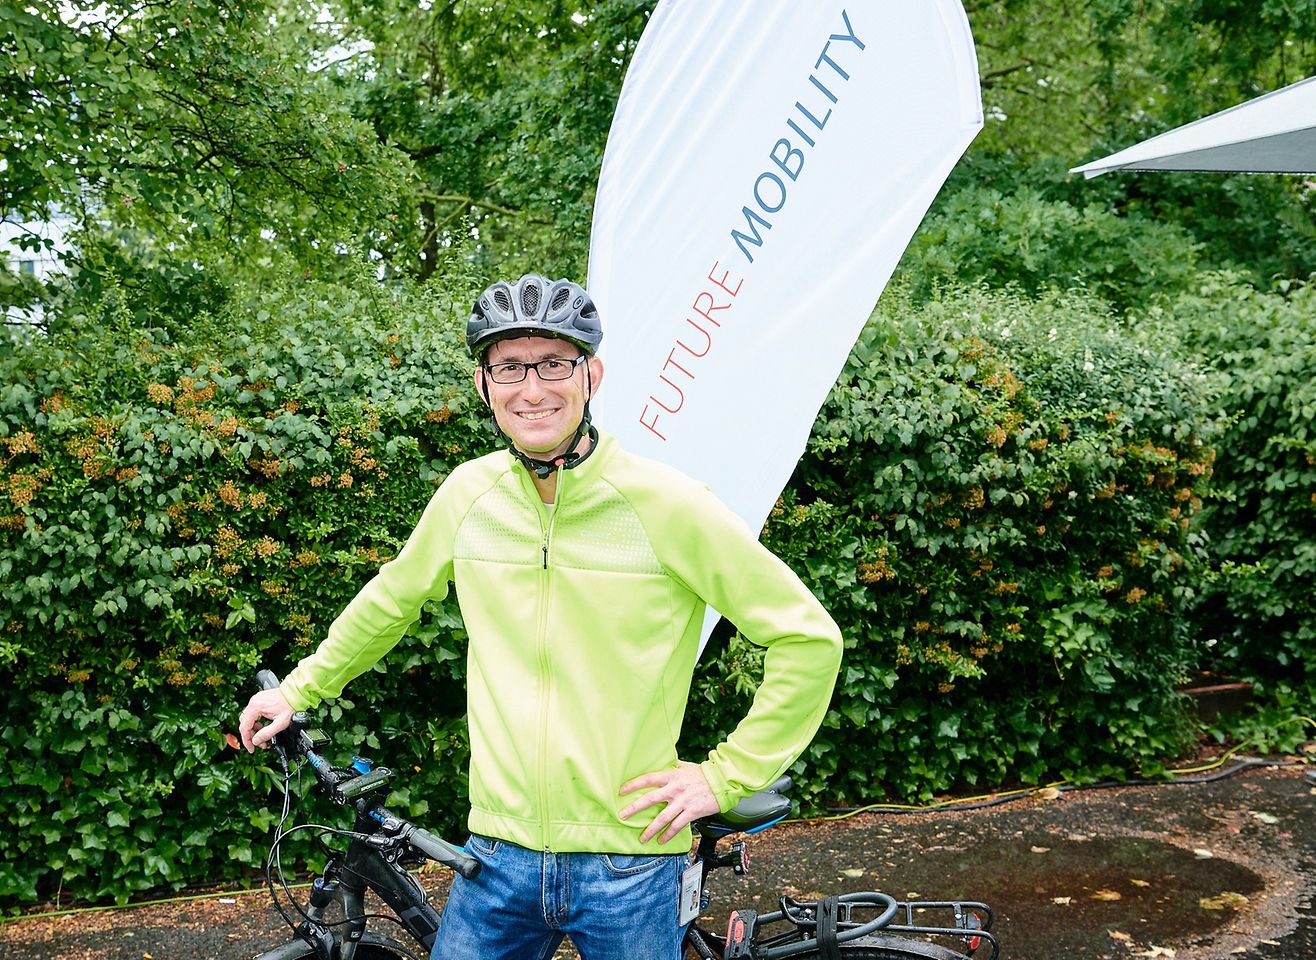 Standortleiter Daniel Kleine kam am Bike to Henkel Day im Juni 2019 mit dem Fahrrad zur Arbeit